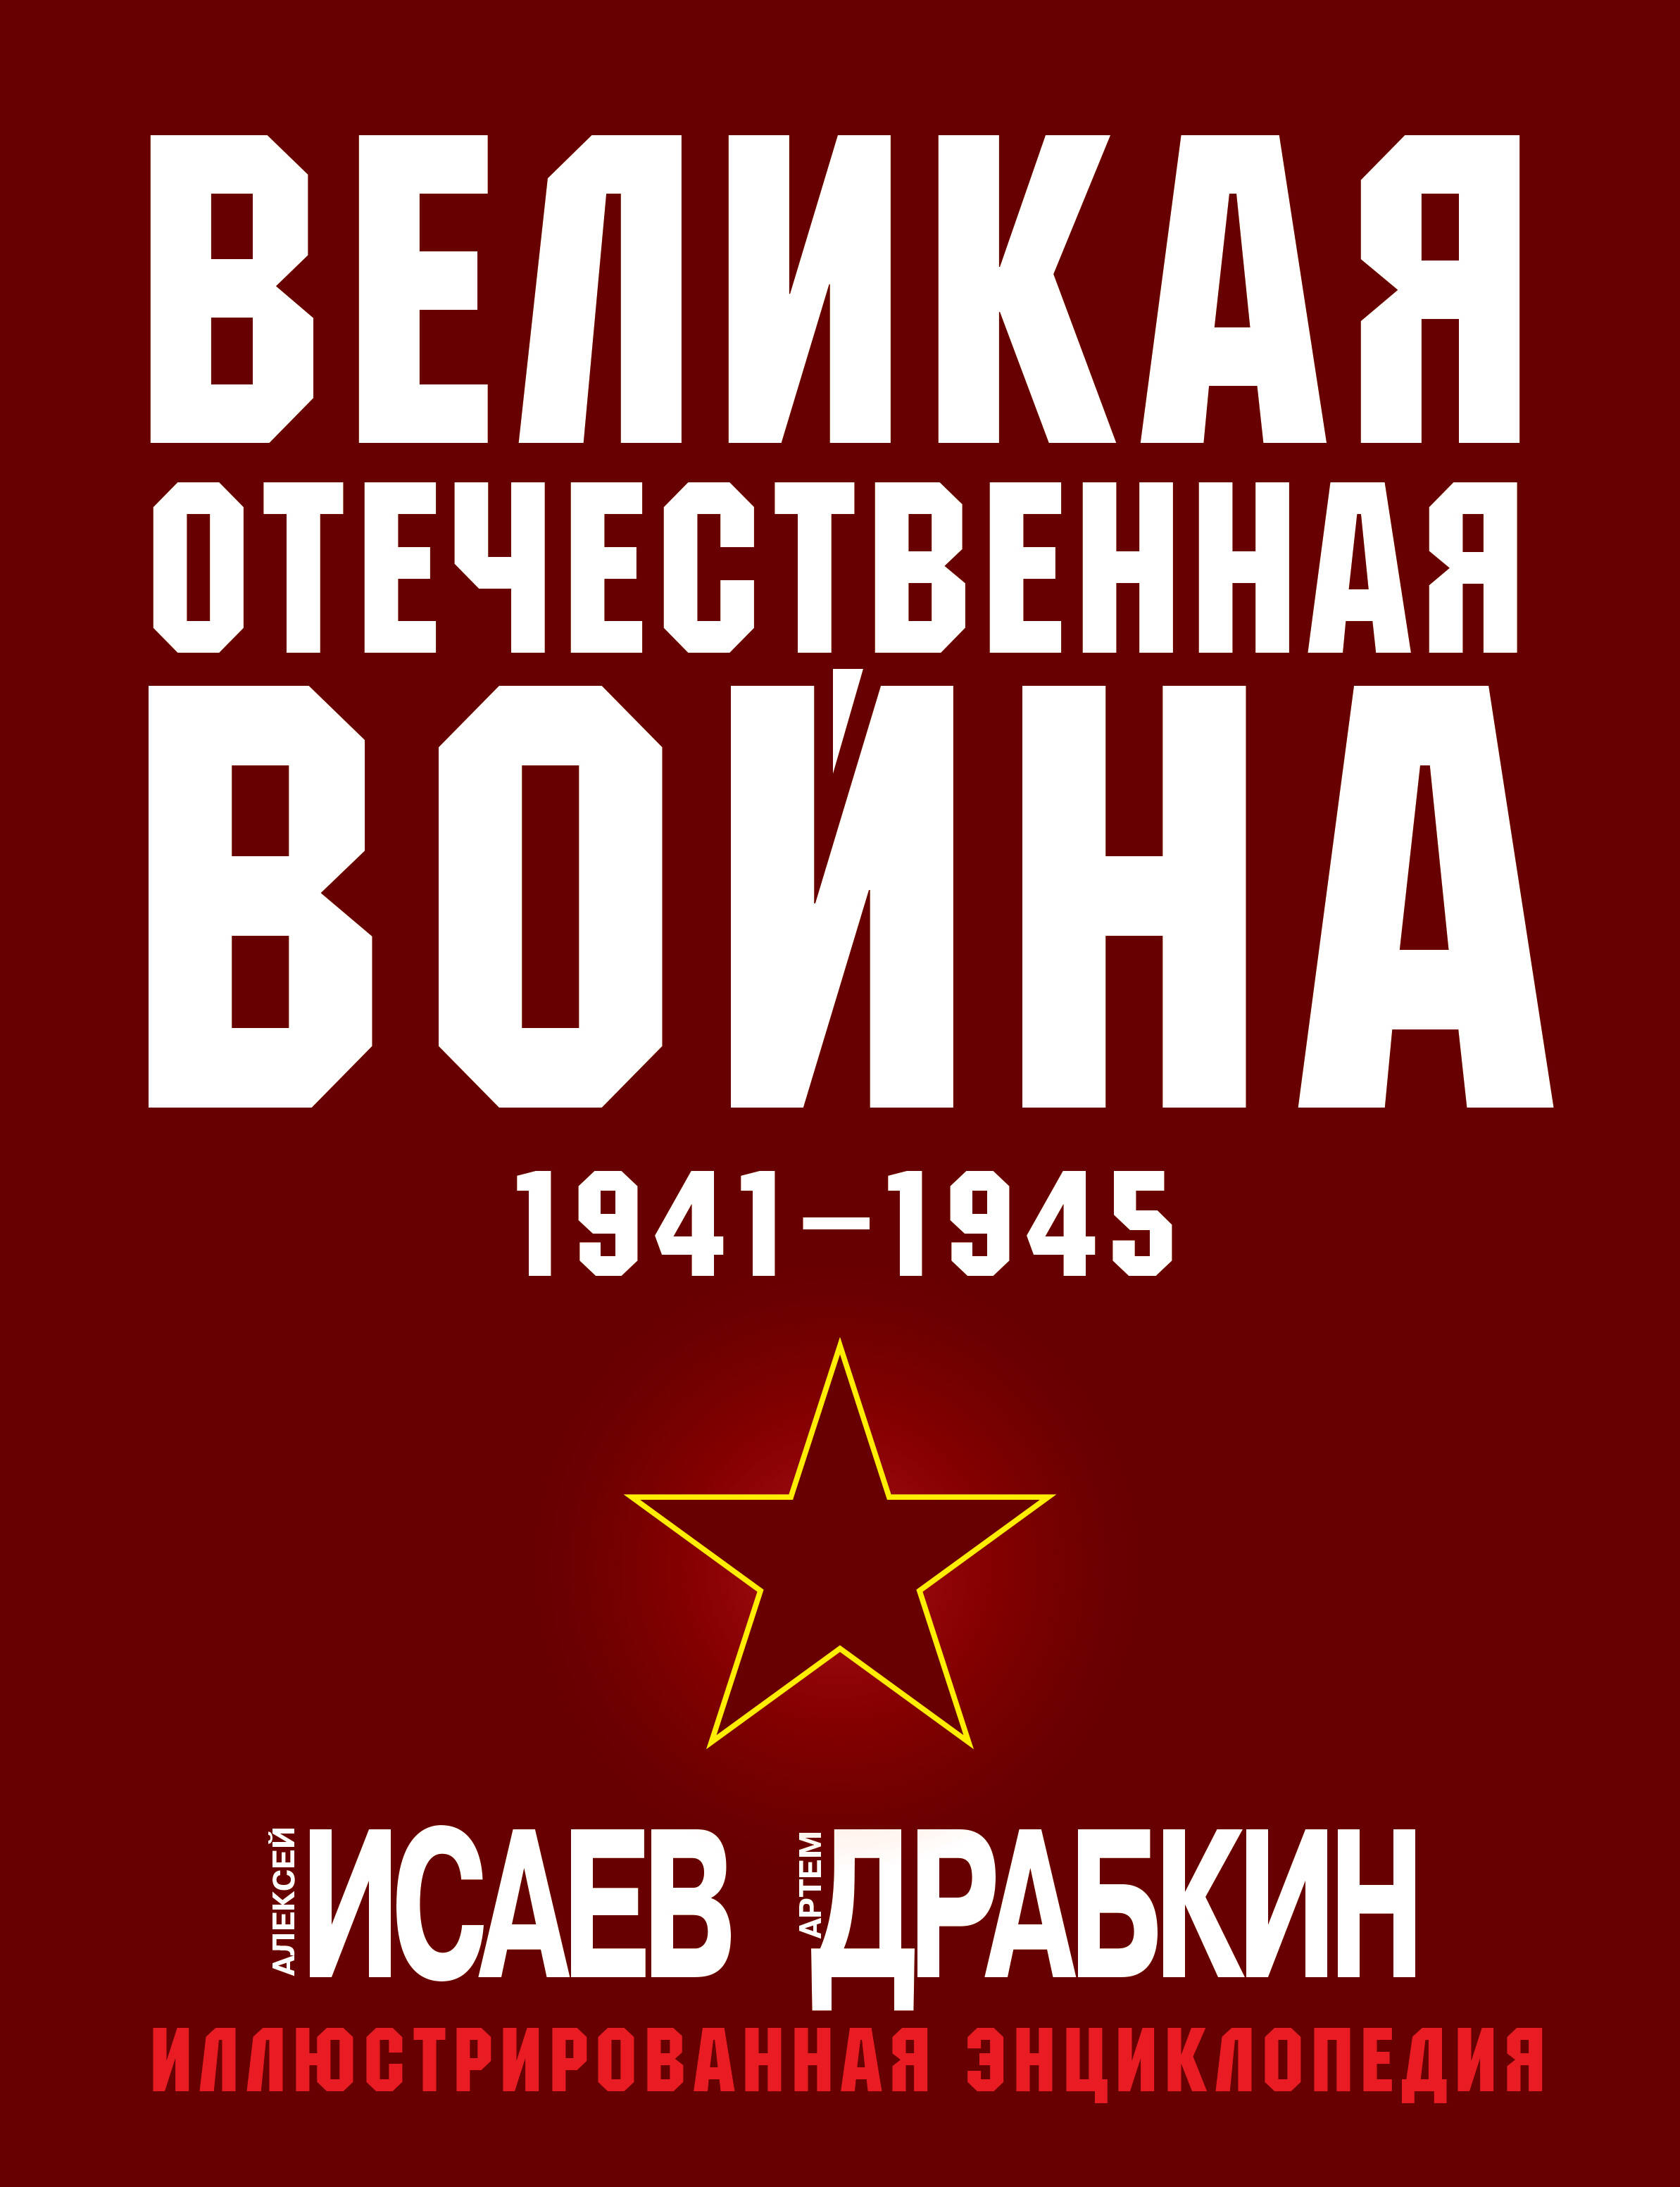    1941-1945.    